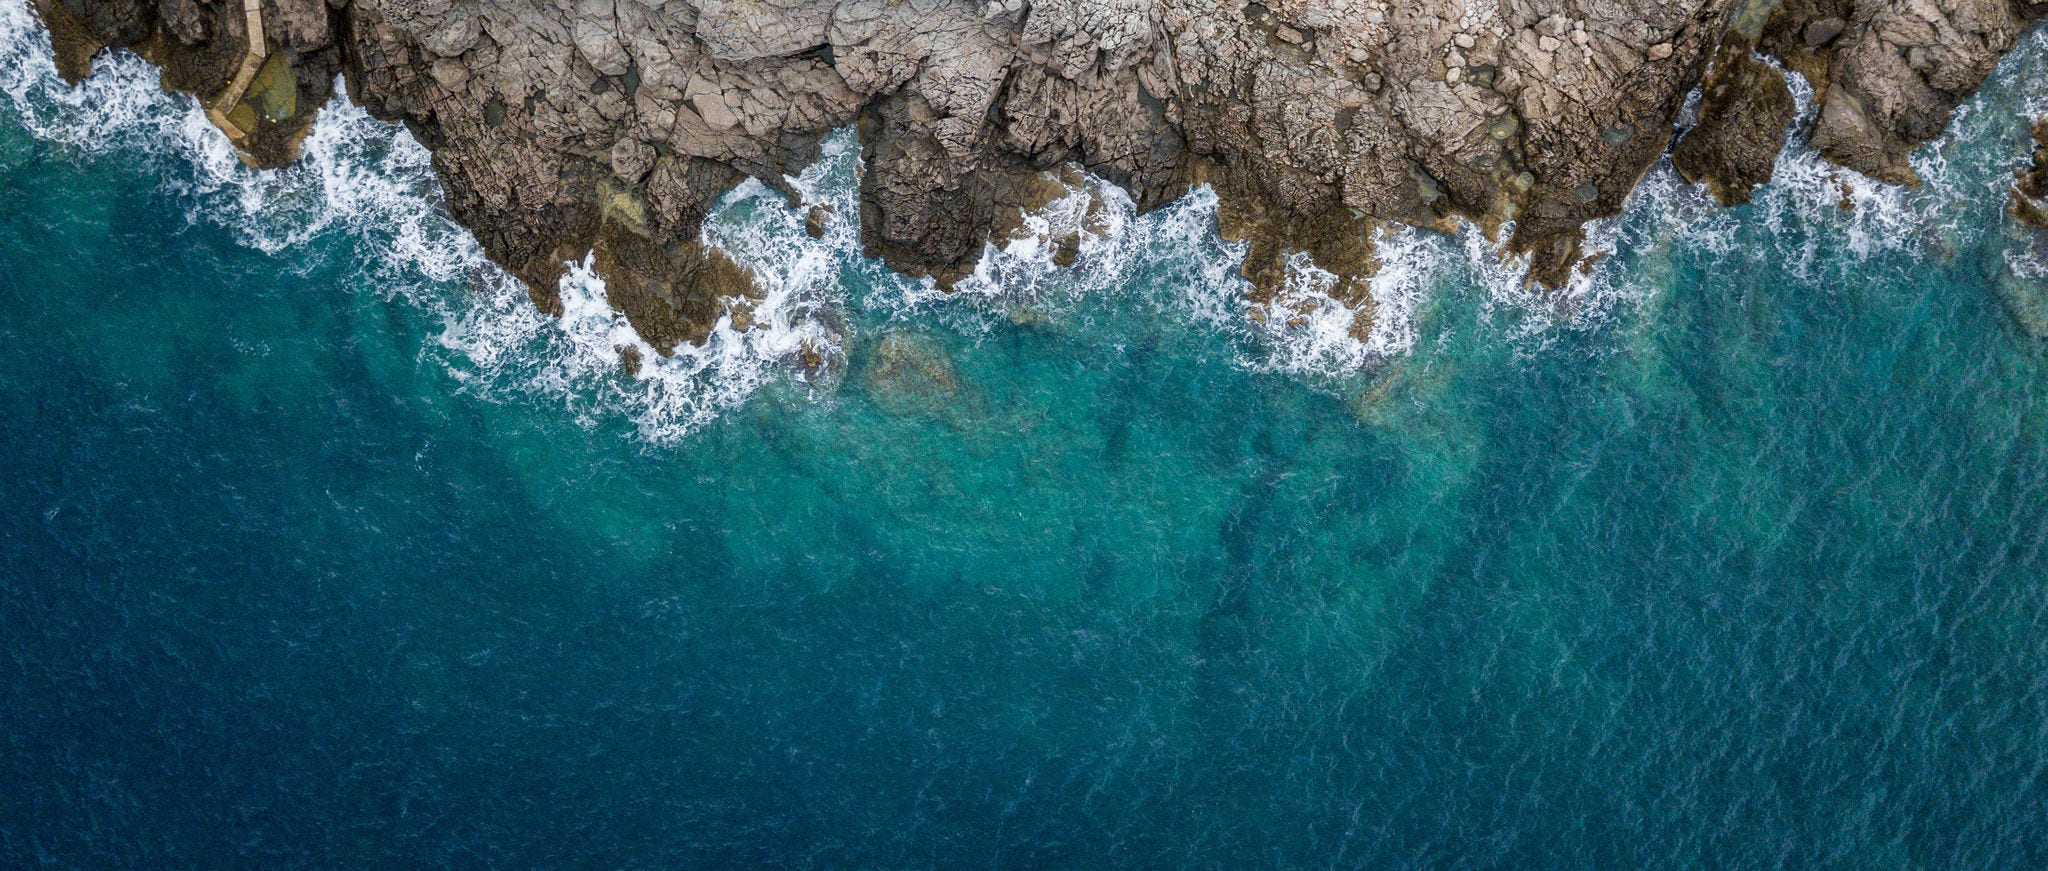 Blue waves crashing on rocky coast 